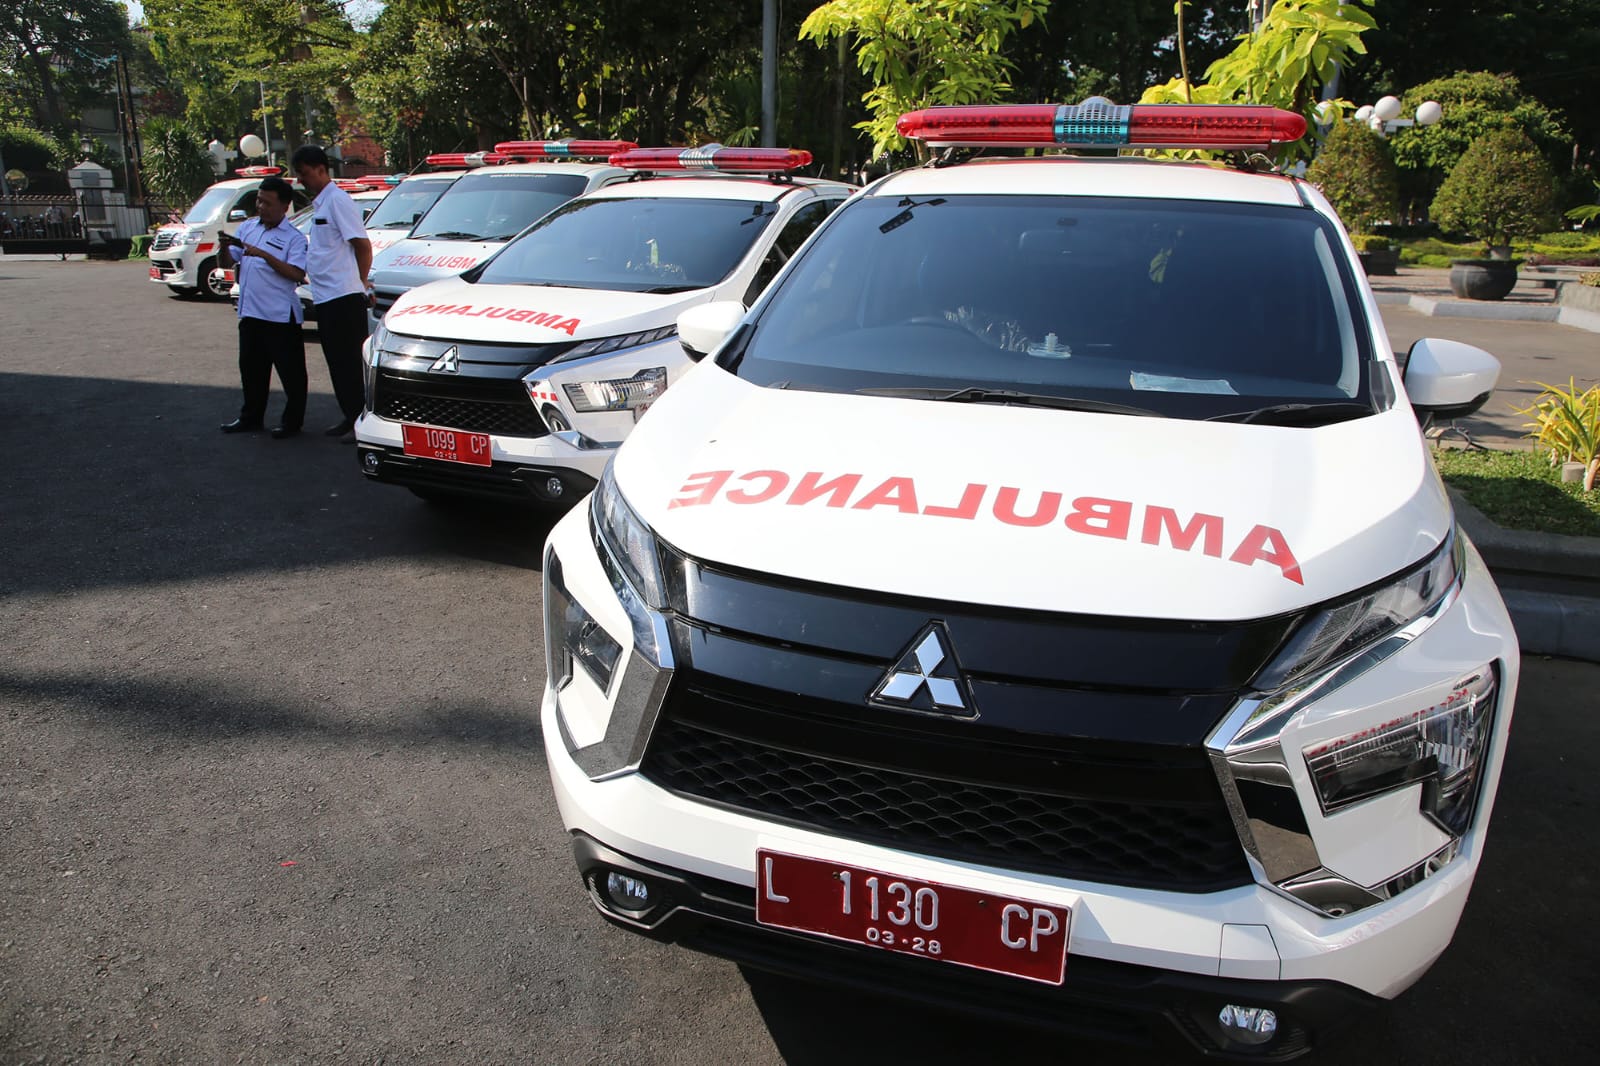 Siap Siaga Selamatkan Nyawa, Ambulans Gratis Kelurahan di Surabaya Diminta Cepat Tanggap